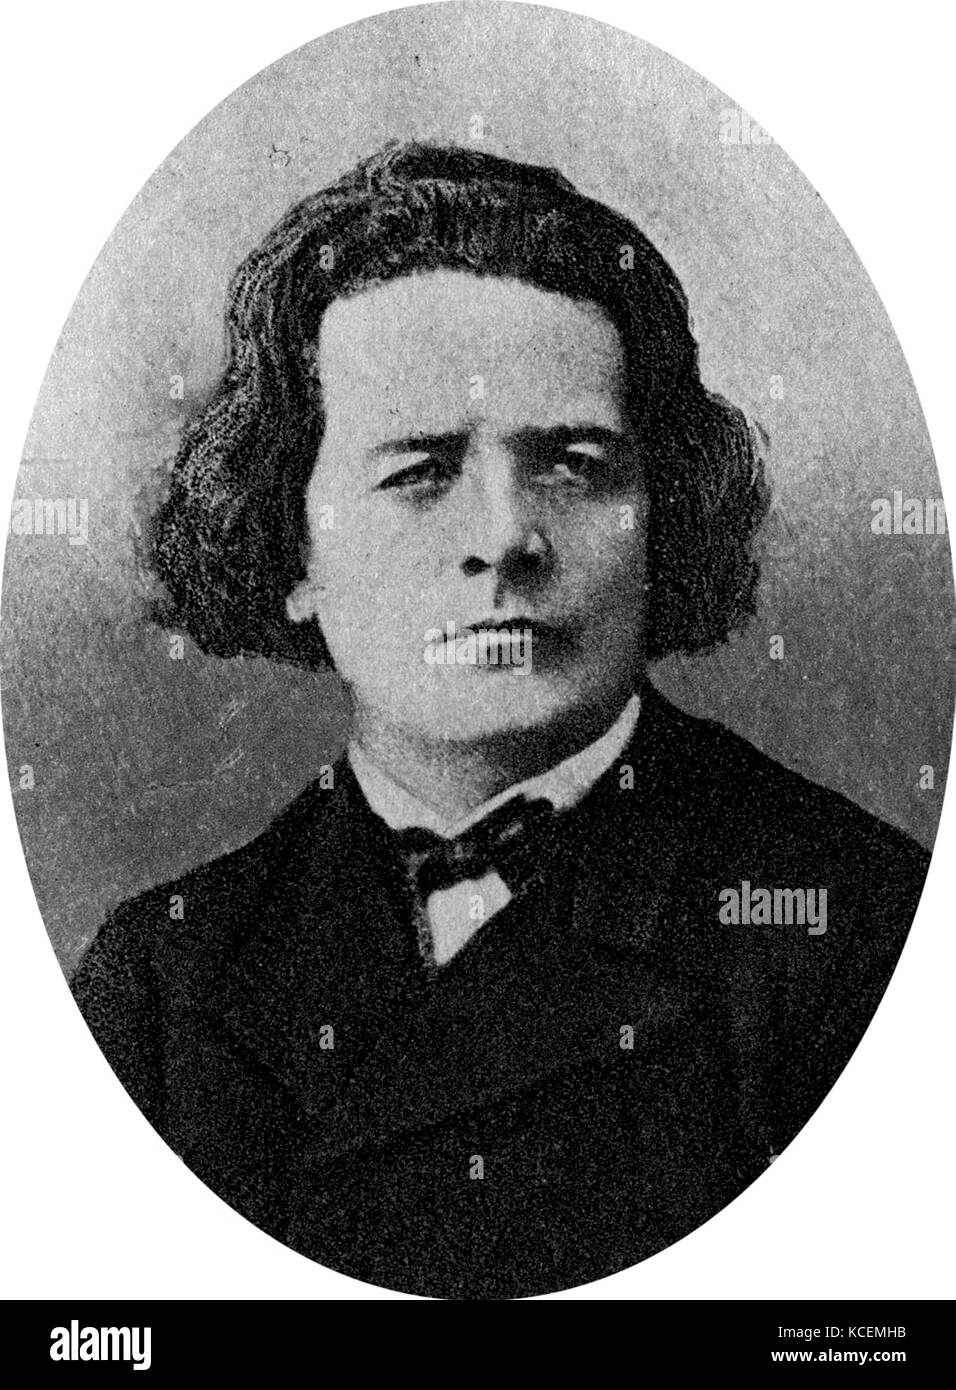 Anton Grigorievitch Rubinstein (1829 - 1894) pianiste, compositeur et chef d'orchestre qui est devenu une figure essentielle dans la culture russe lorsqu'il fonde le Conservatoire de Saint-Pétersbourg. Banque D'Images